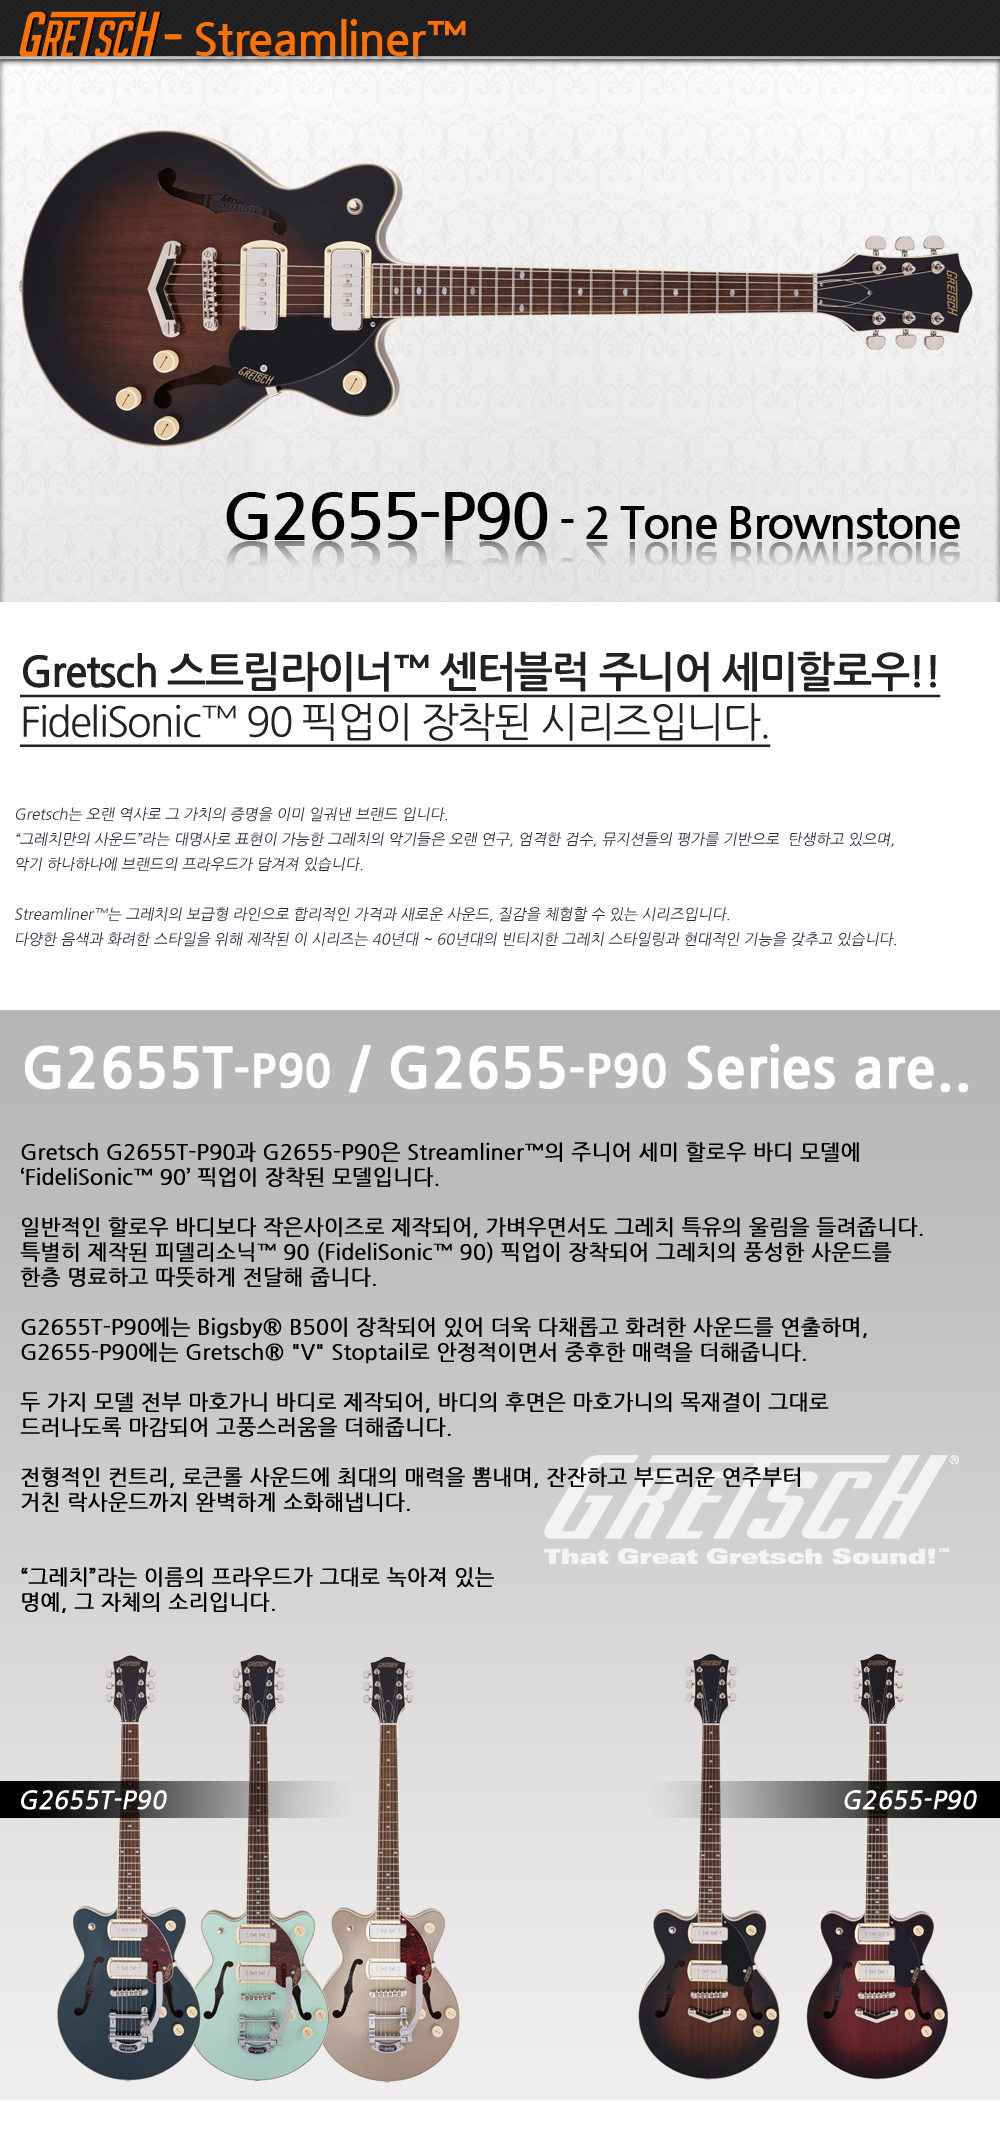 Gretsch-G2655-P90-Brownstone_1_143901.jpg